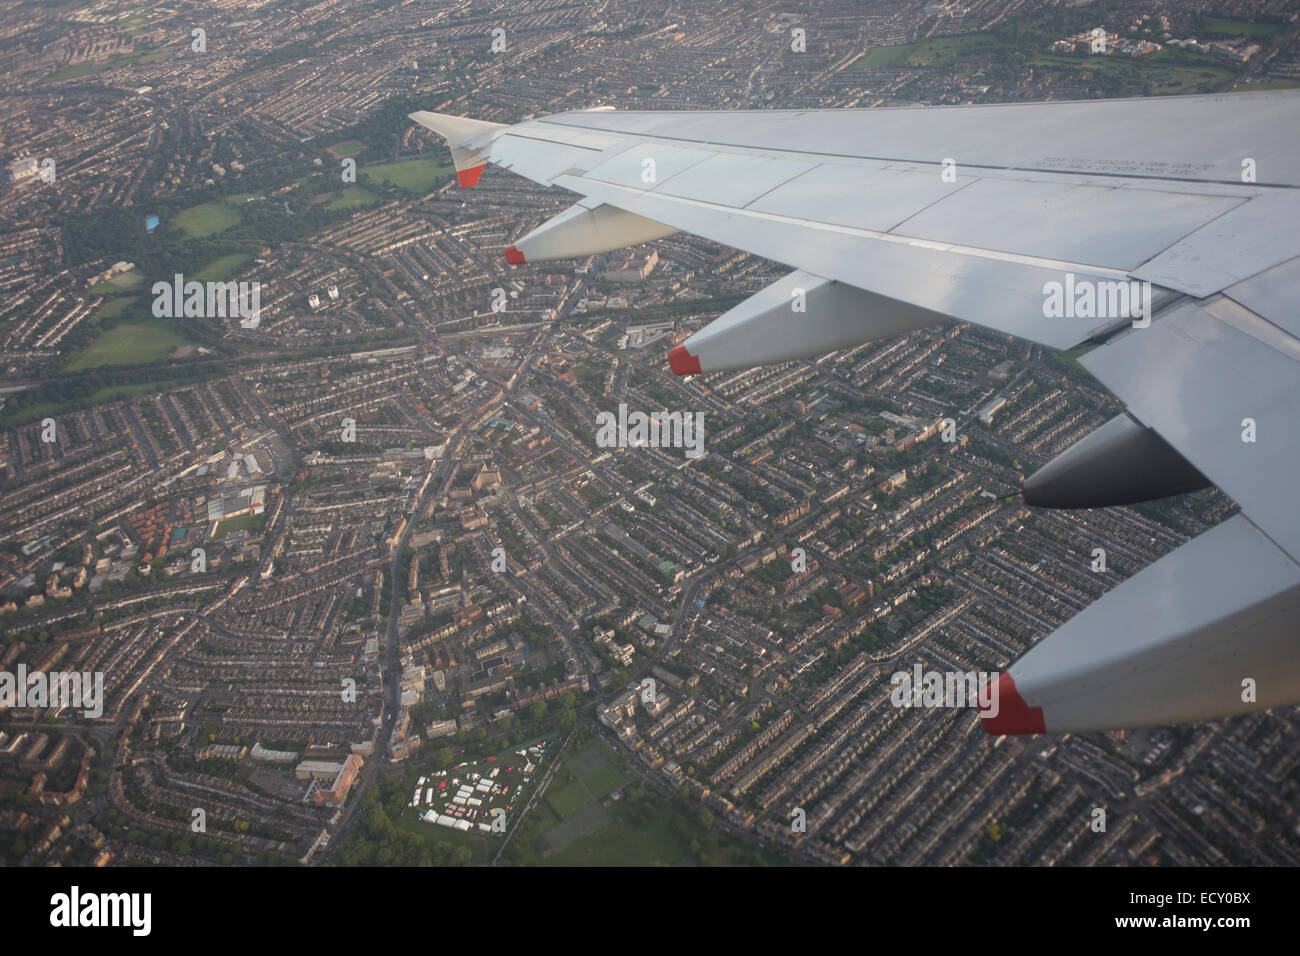 Siège de fenêtre Vue d'avion de ligne au milieu du chenal et de l'espace aérien au-dessus de l'aile ouest de Londres. Banque D'Images